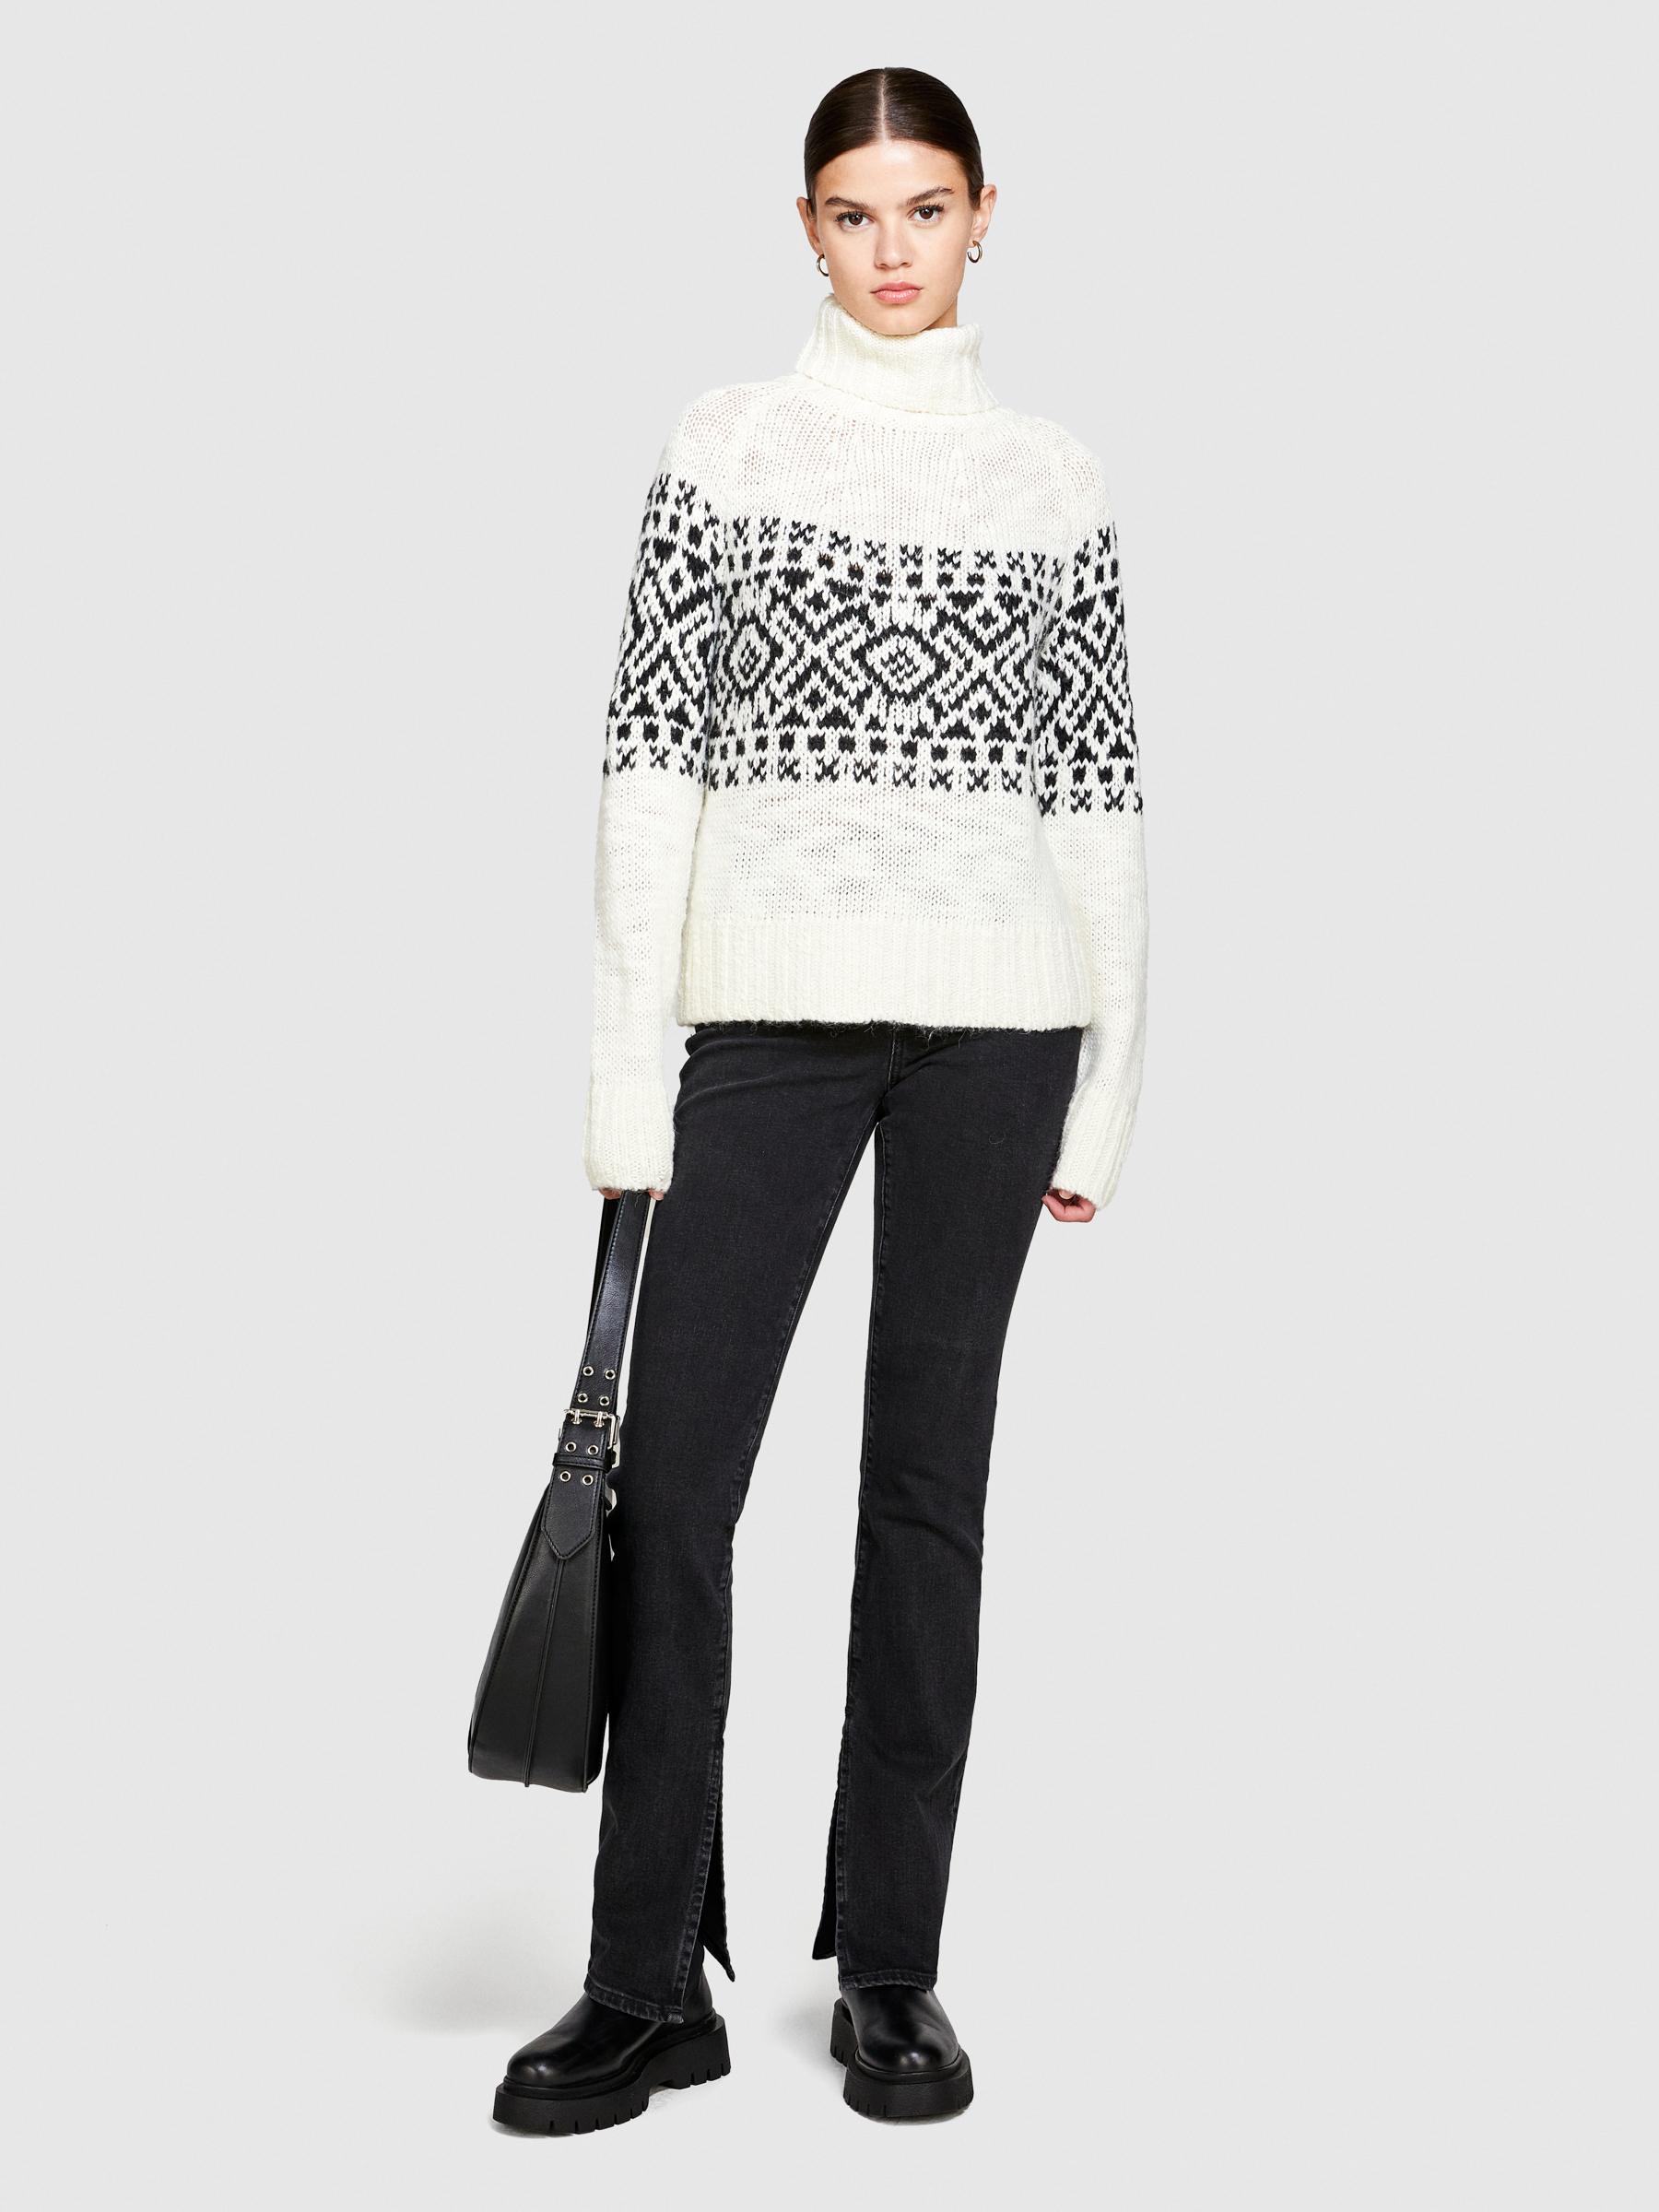 Sisley - Jacquard Turtleneck Sweater, Woman, Creamy White, Size: L